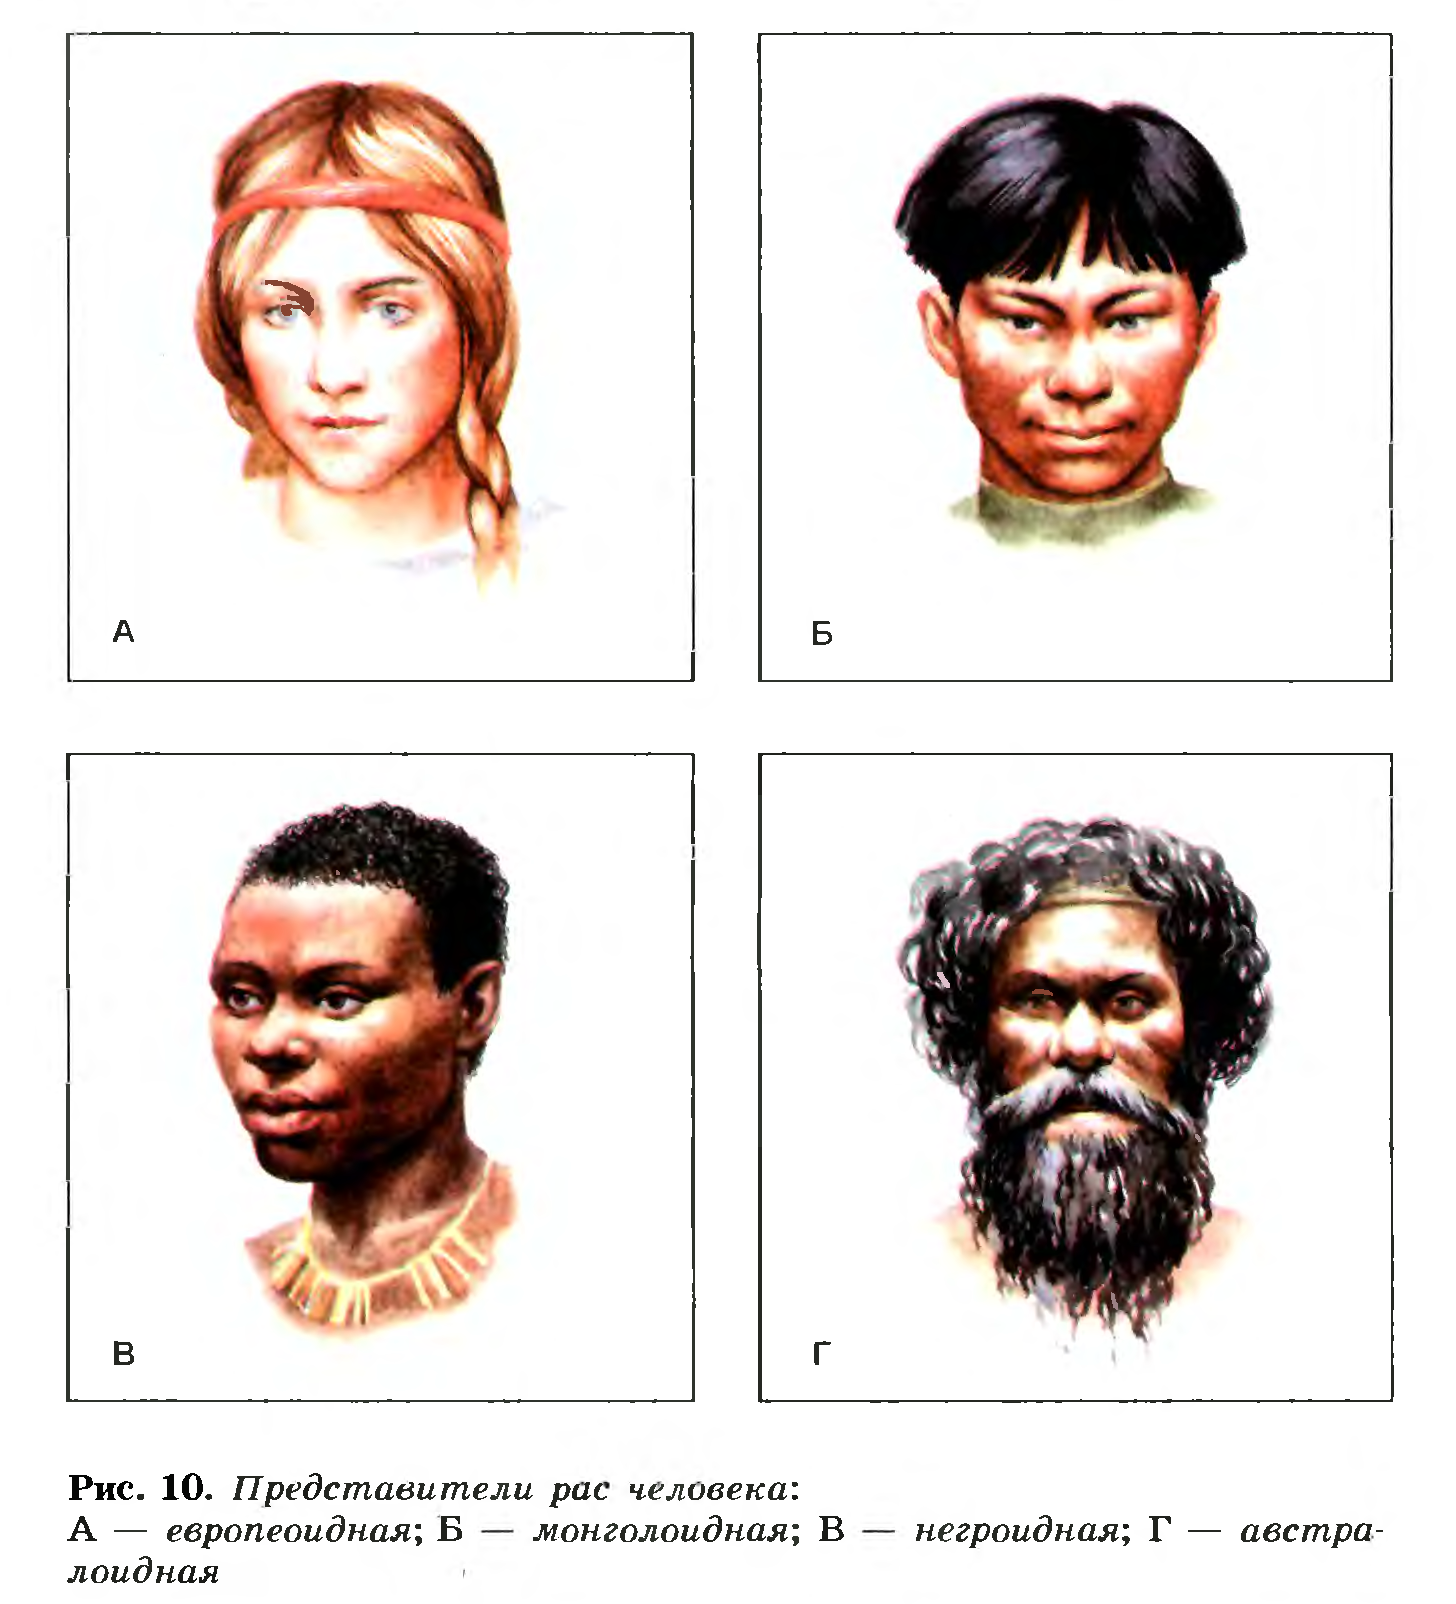 6 человеческие расы. Люди европеоидной и монголоидной расы. Негроидная и монголоидная раса. 4 Расы людей европеоидная монголоидная негроидная и. 4 Расы людей на земле.